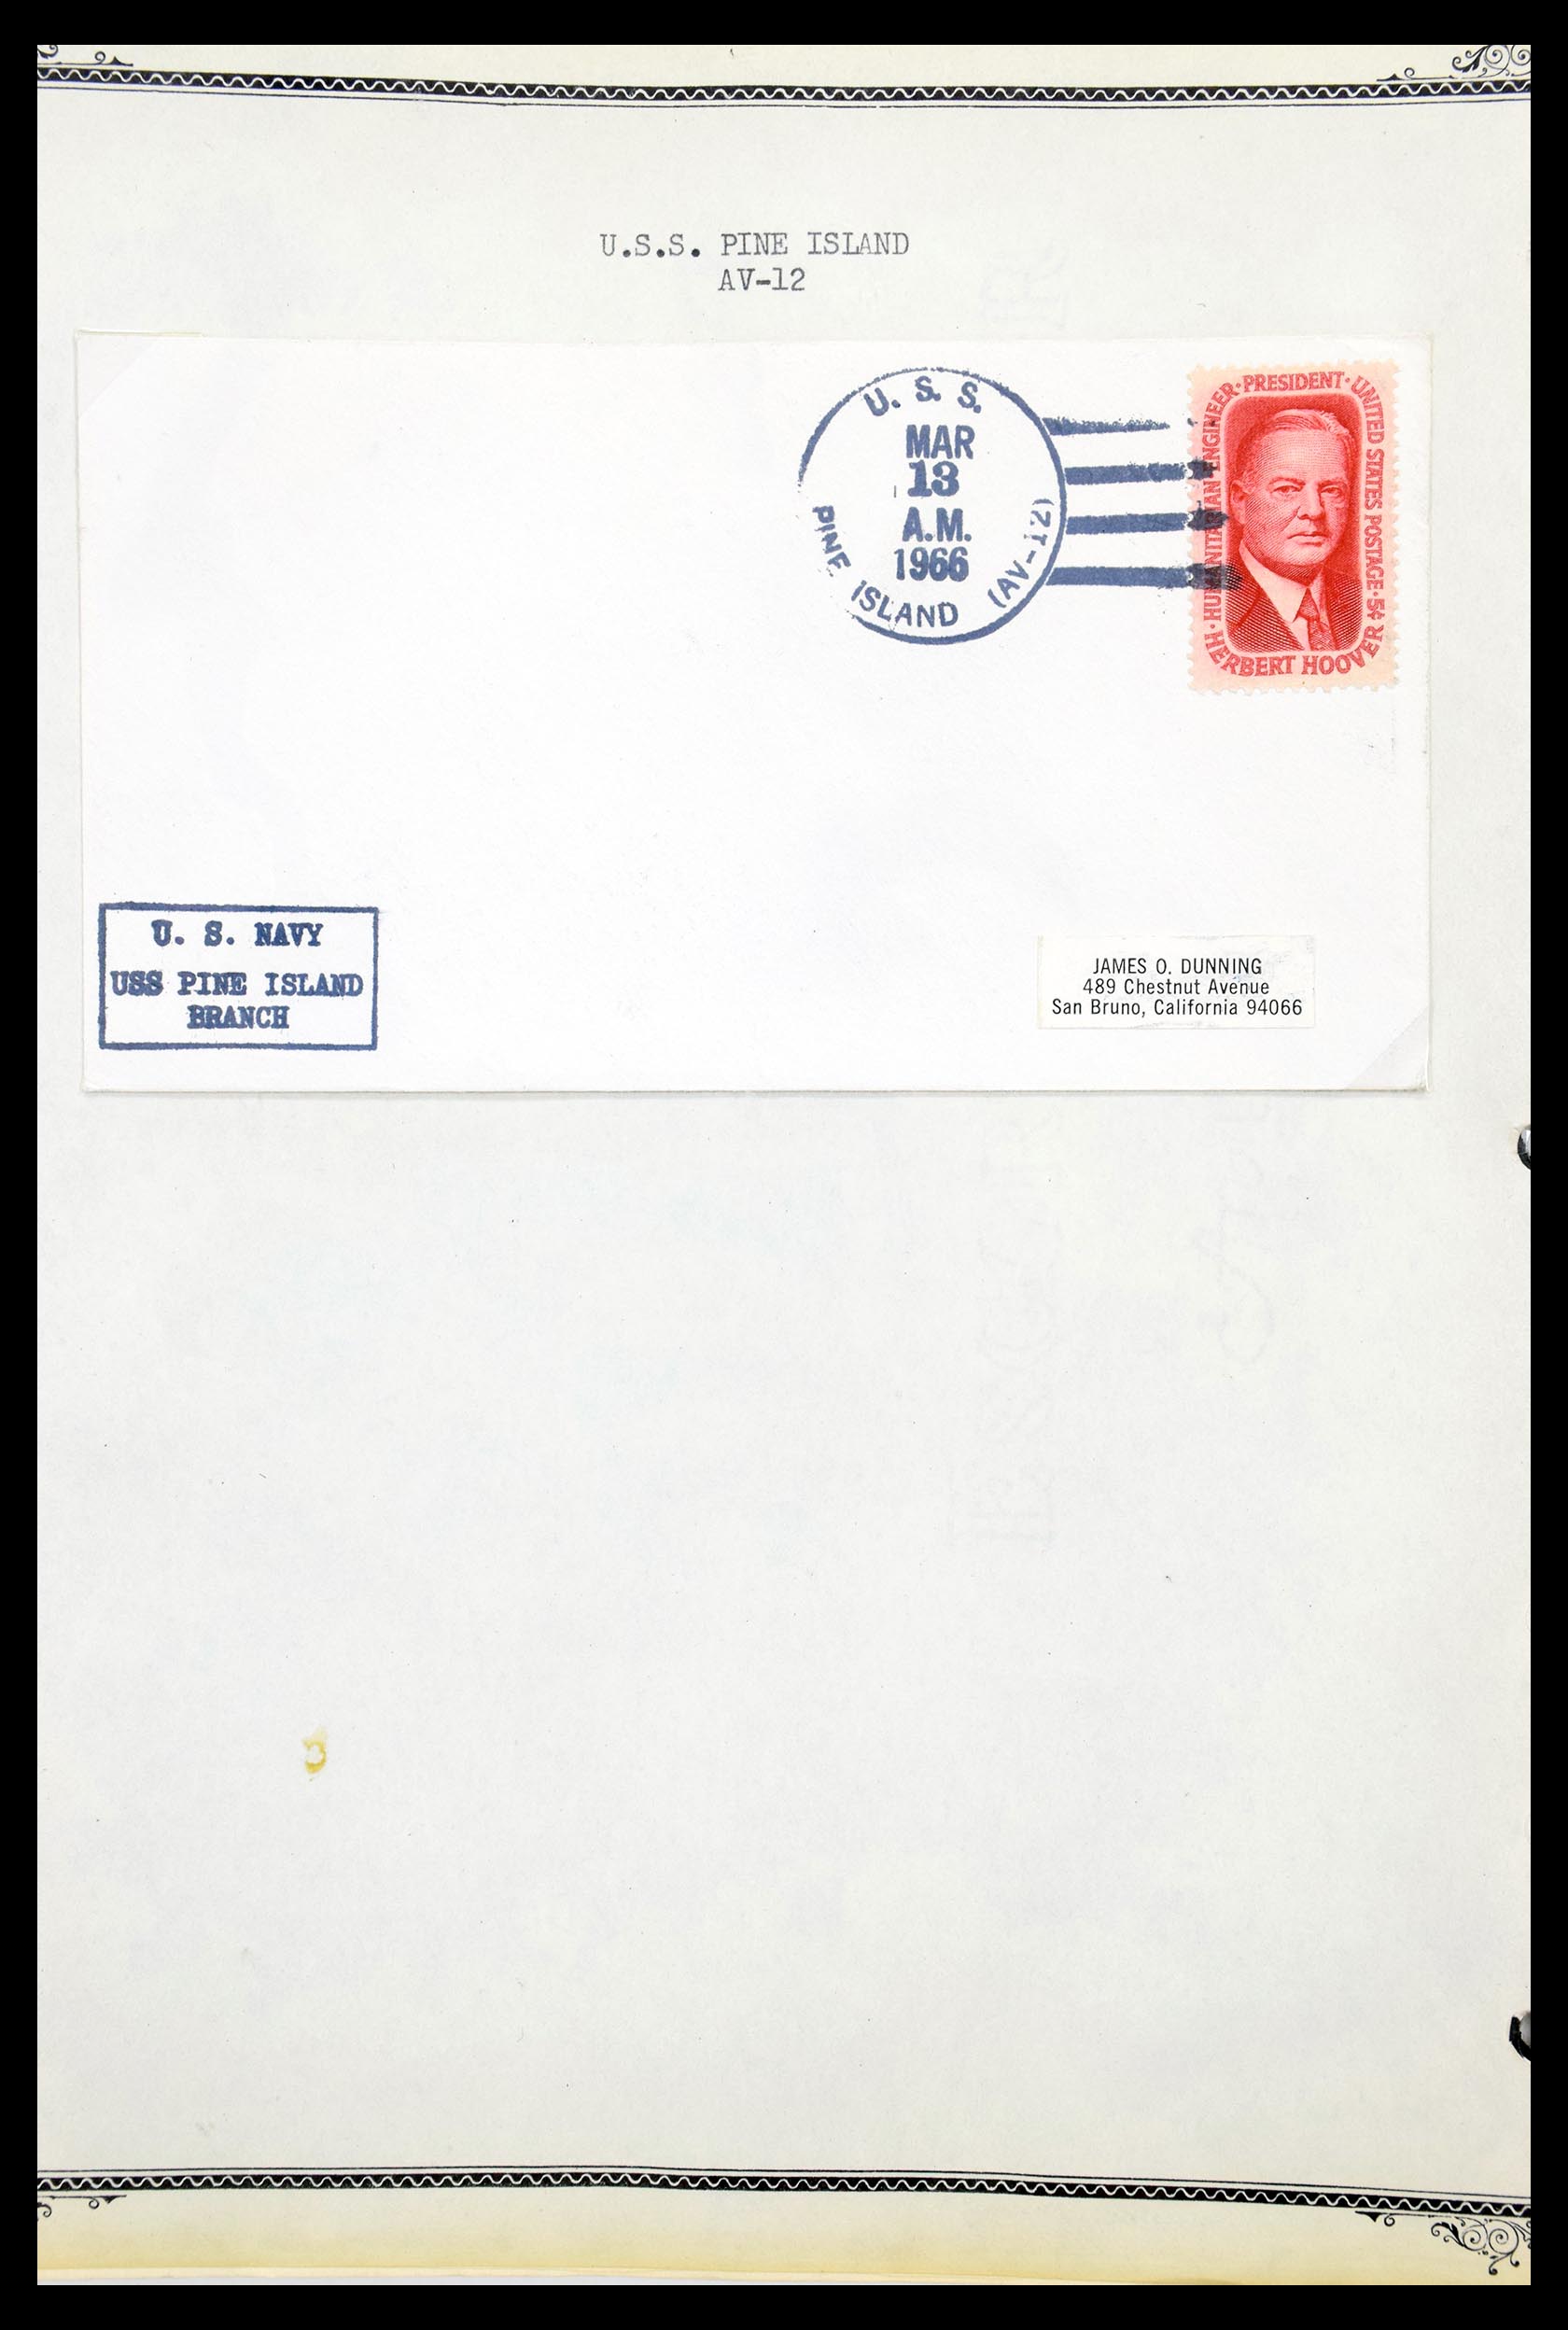 30341 084 - 30341 USA scheepspost brieven 1930-1970.